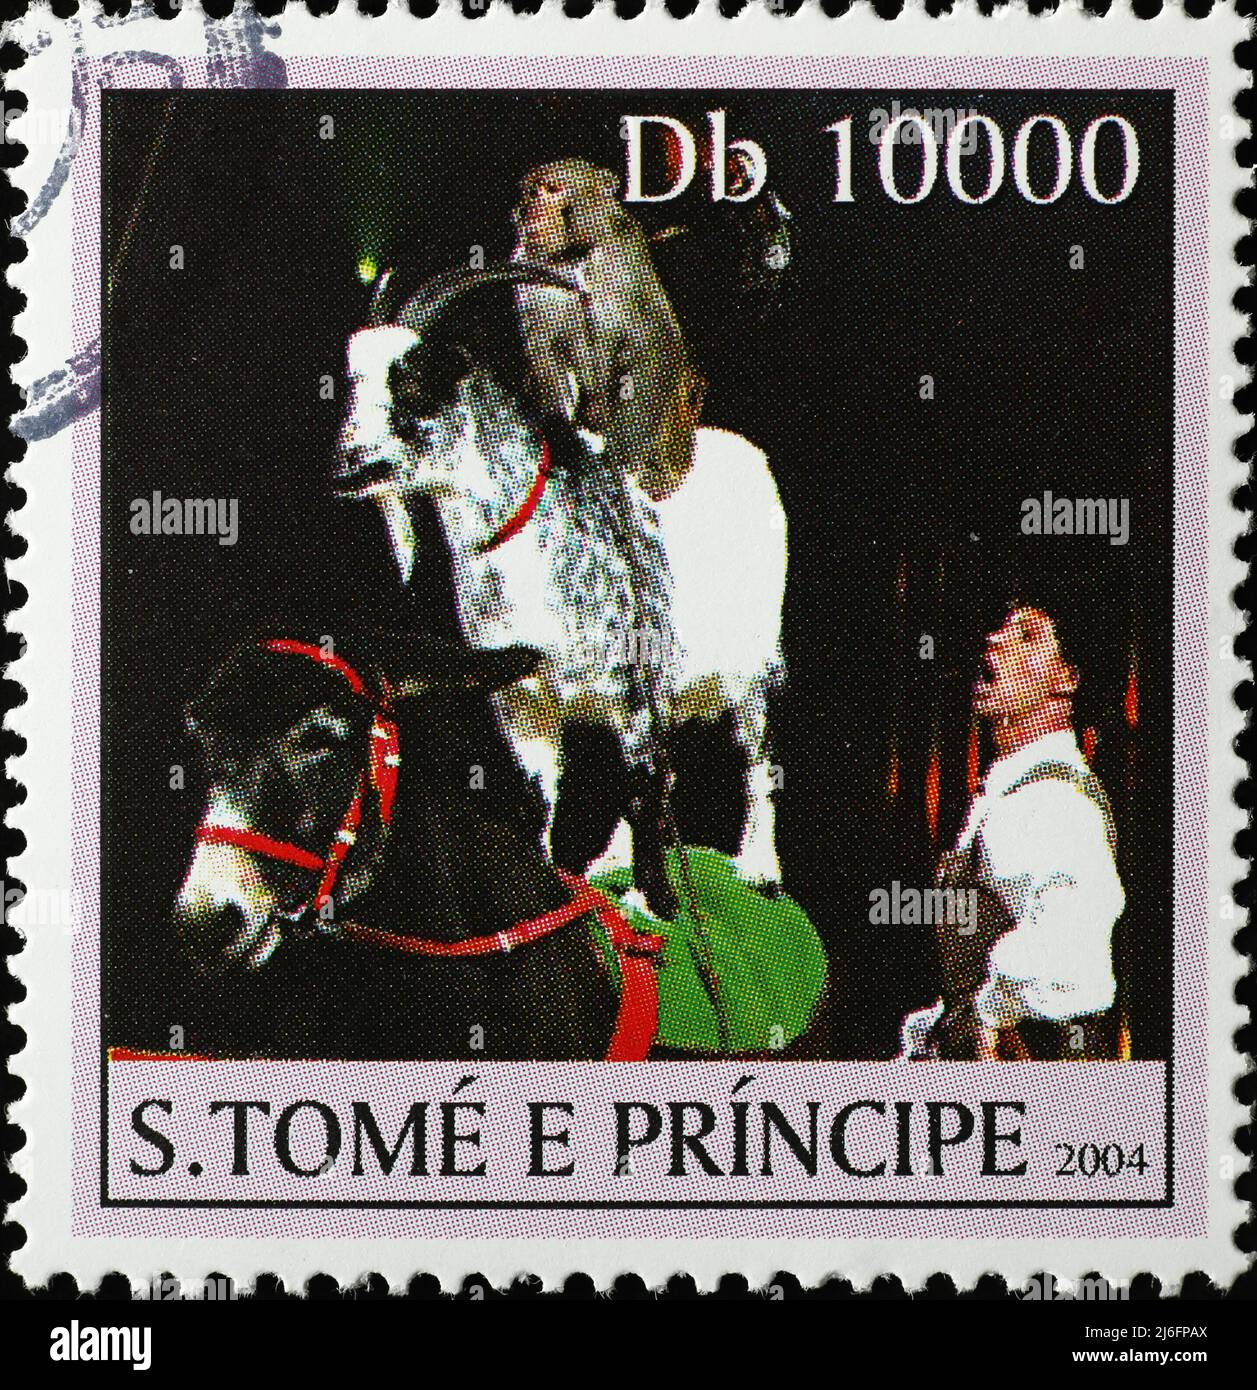 Bild von trainierten Tieren im Zirkus auf Briefmarke Stockfoto